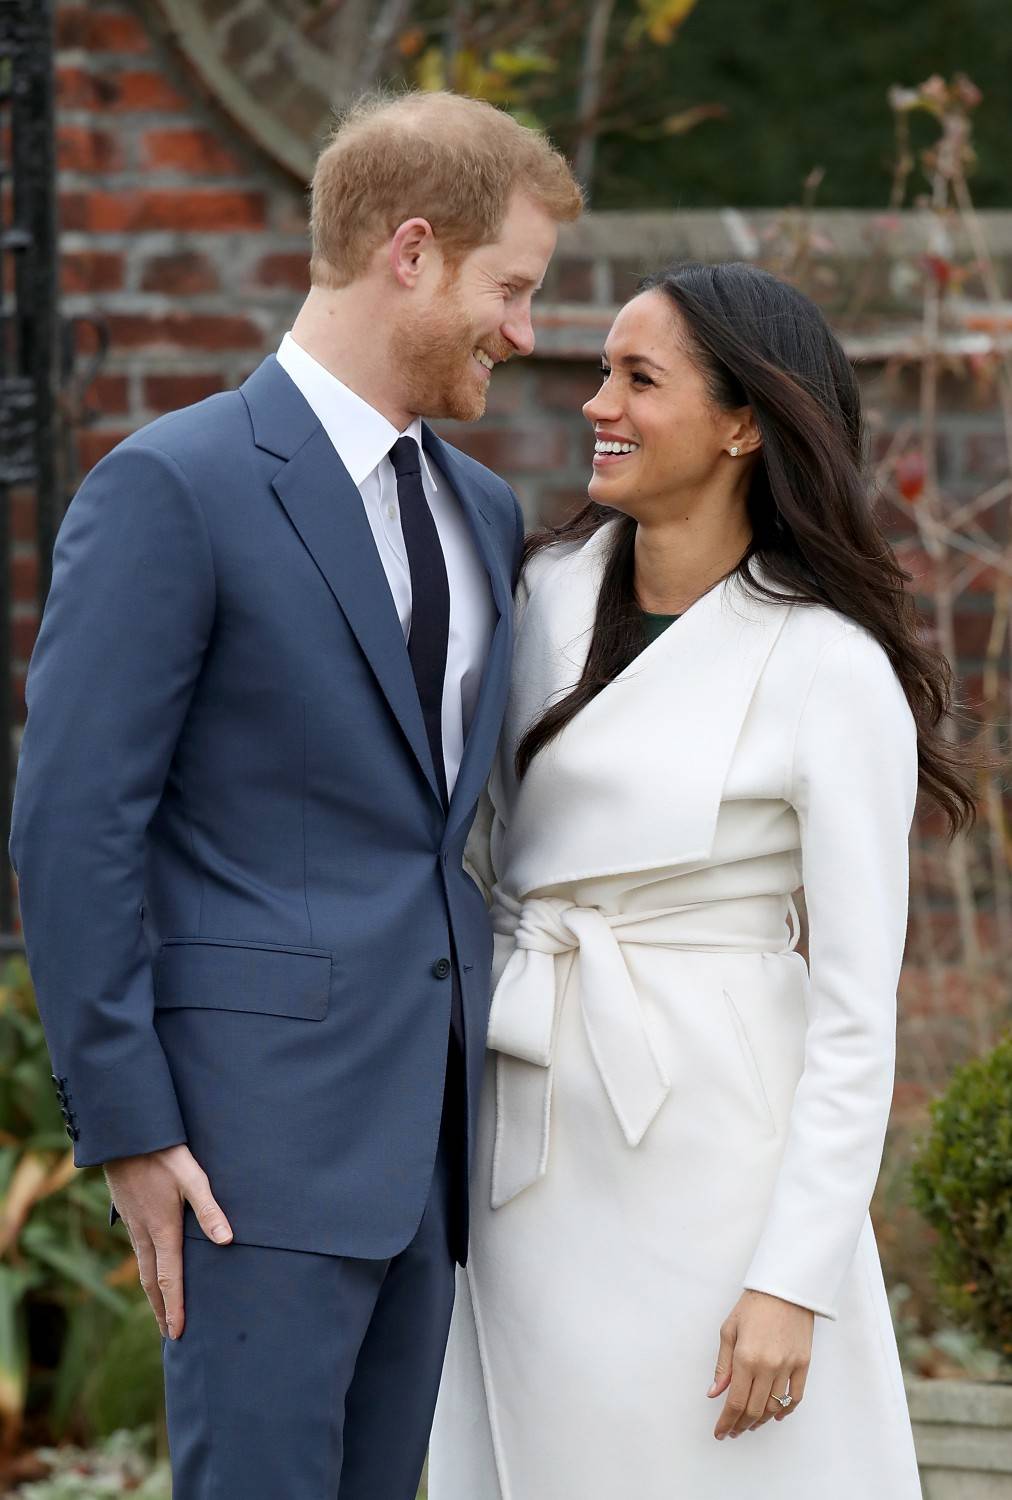 Nozze reali, Harry e Meghan sposi a maggio nel castello di Windsor